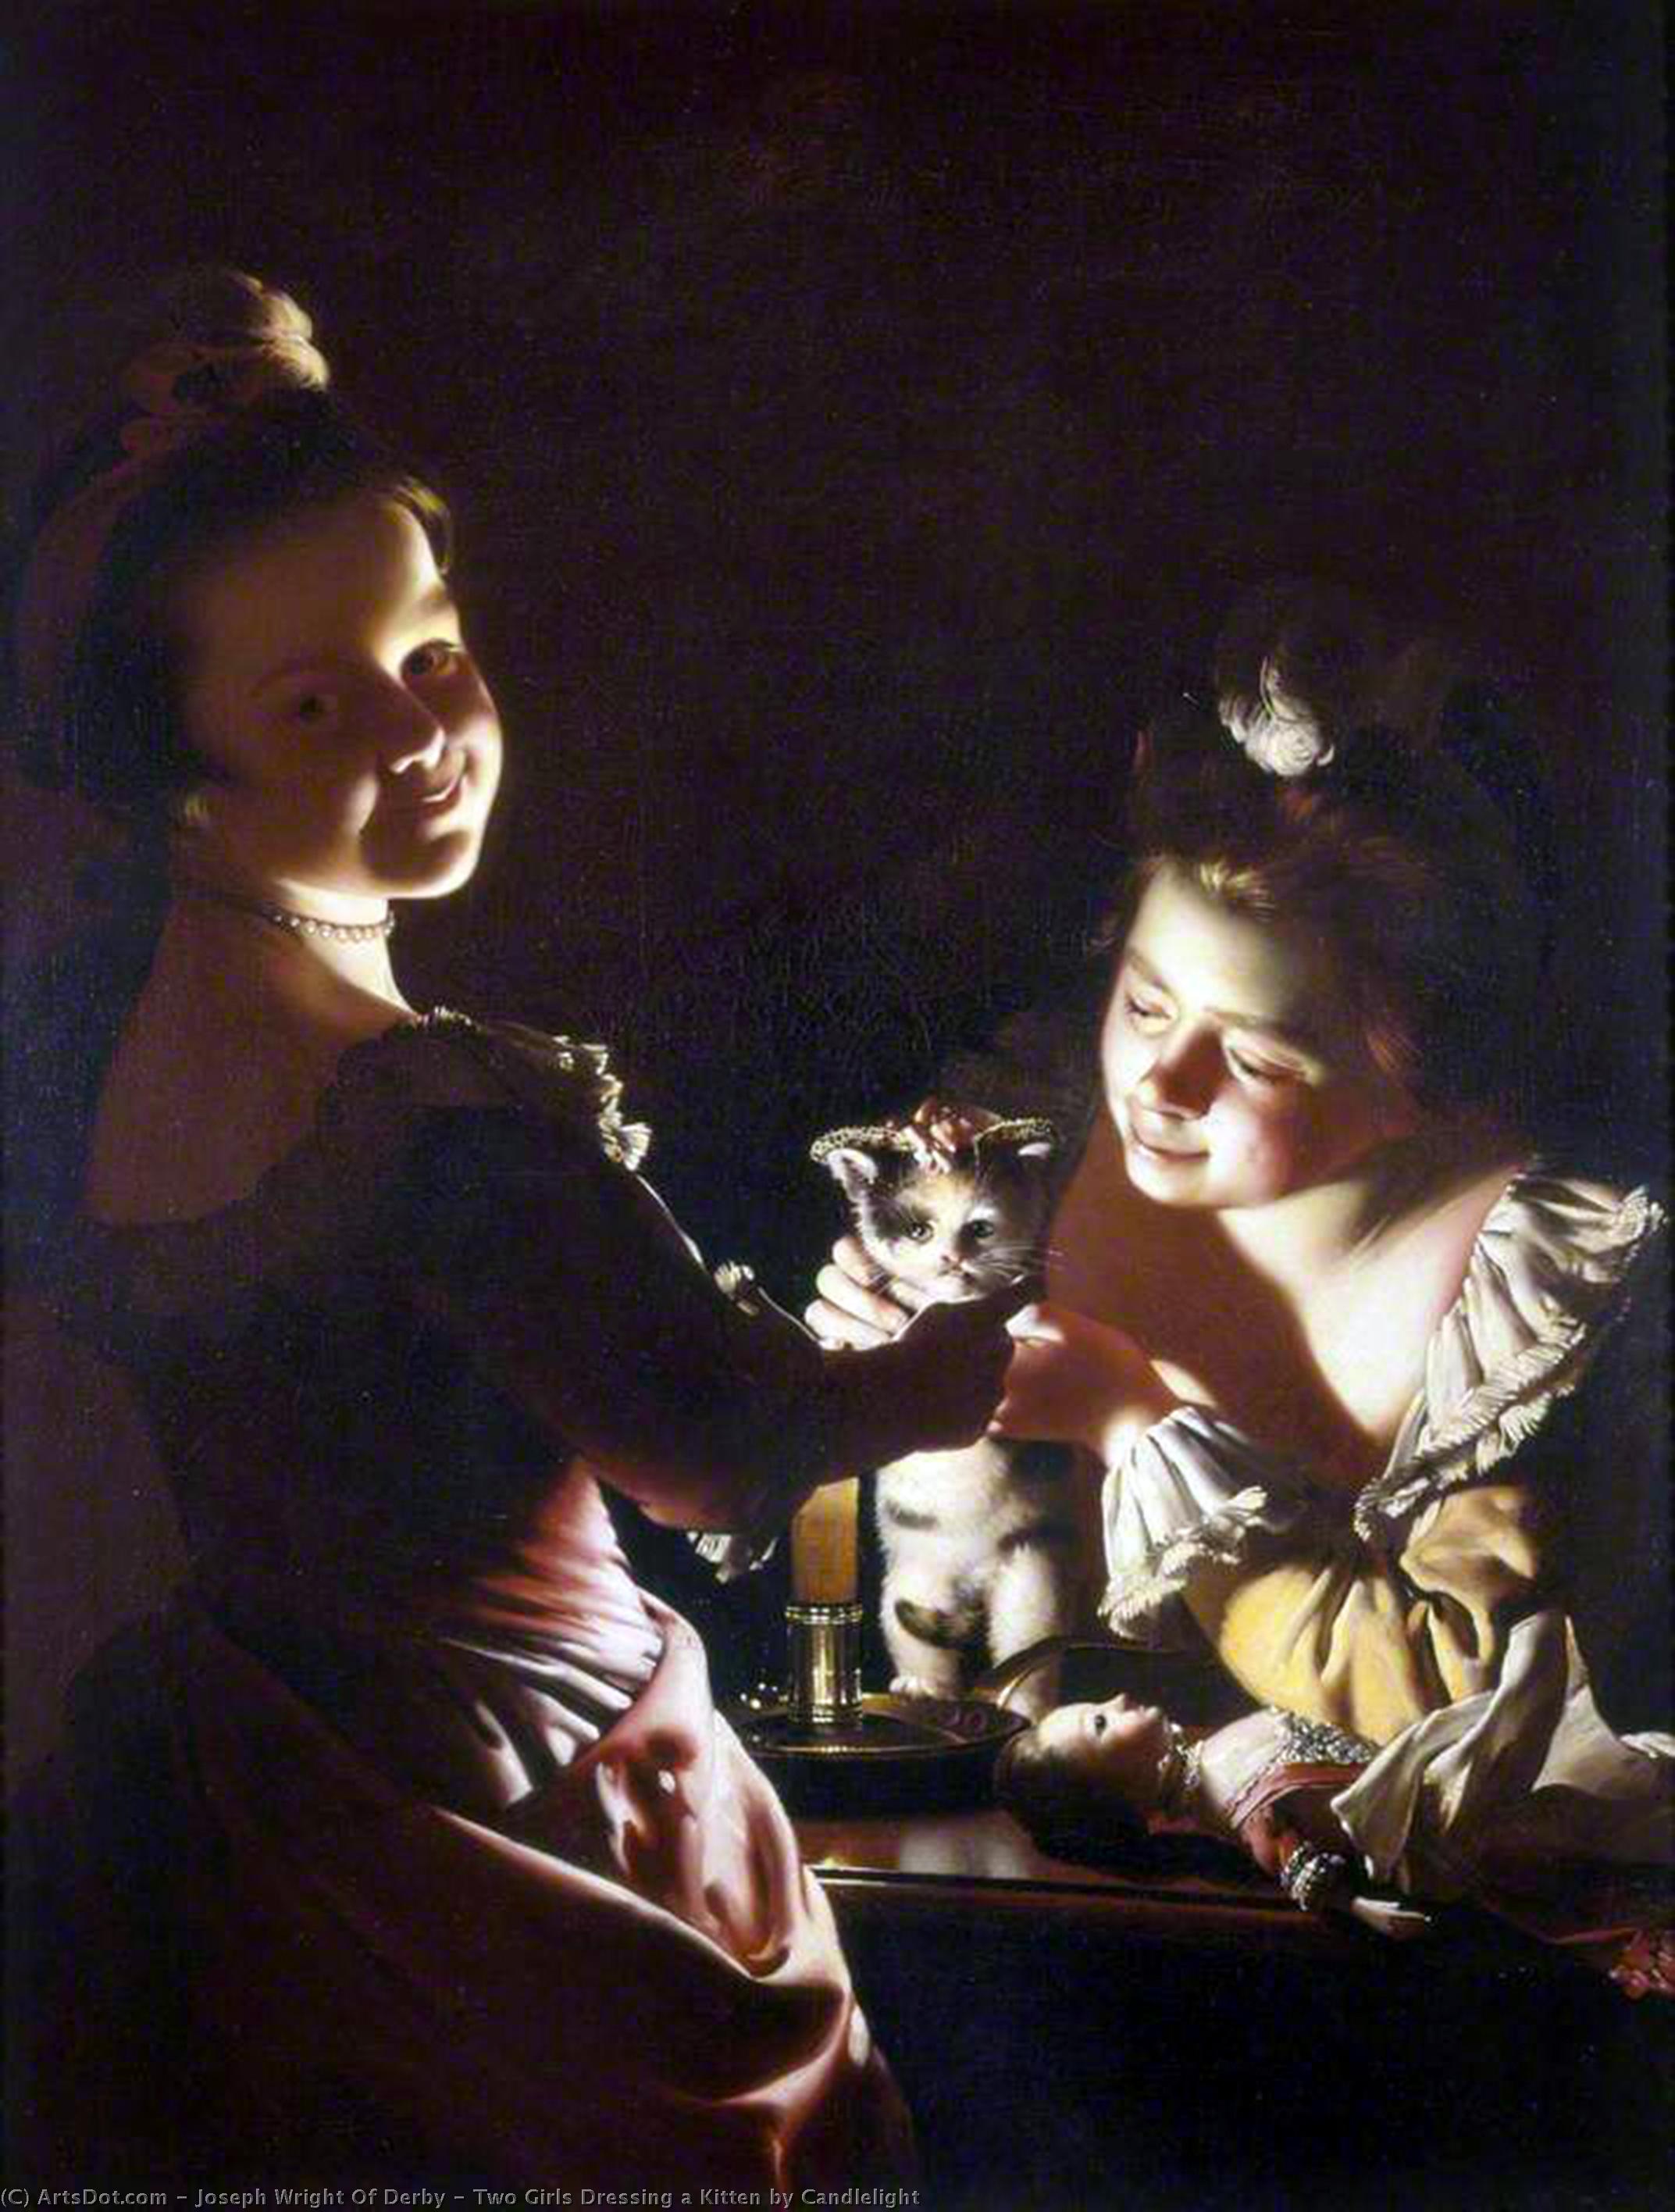 Wikioo.org - Bách khoa toàn thư về mỹ thuật - Vẽ tranh, Tác phẩm nghệ thuật Joseph Wright Of Derby - Two Girls Dressing a Kitten by Candlelight